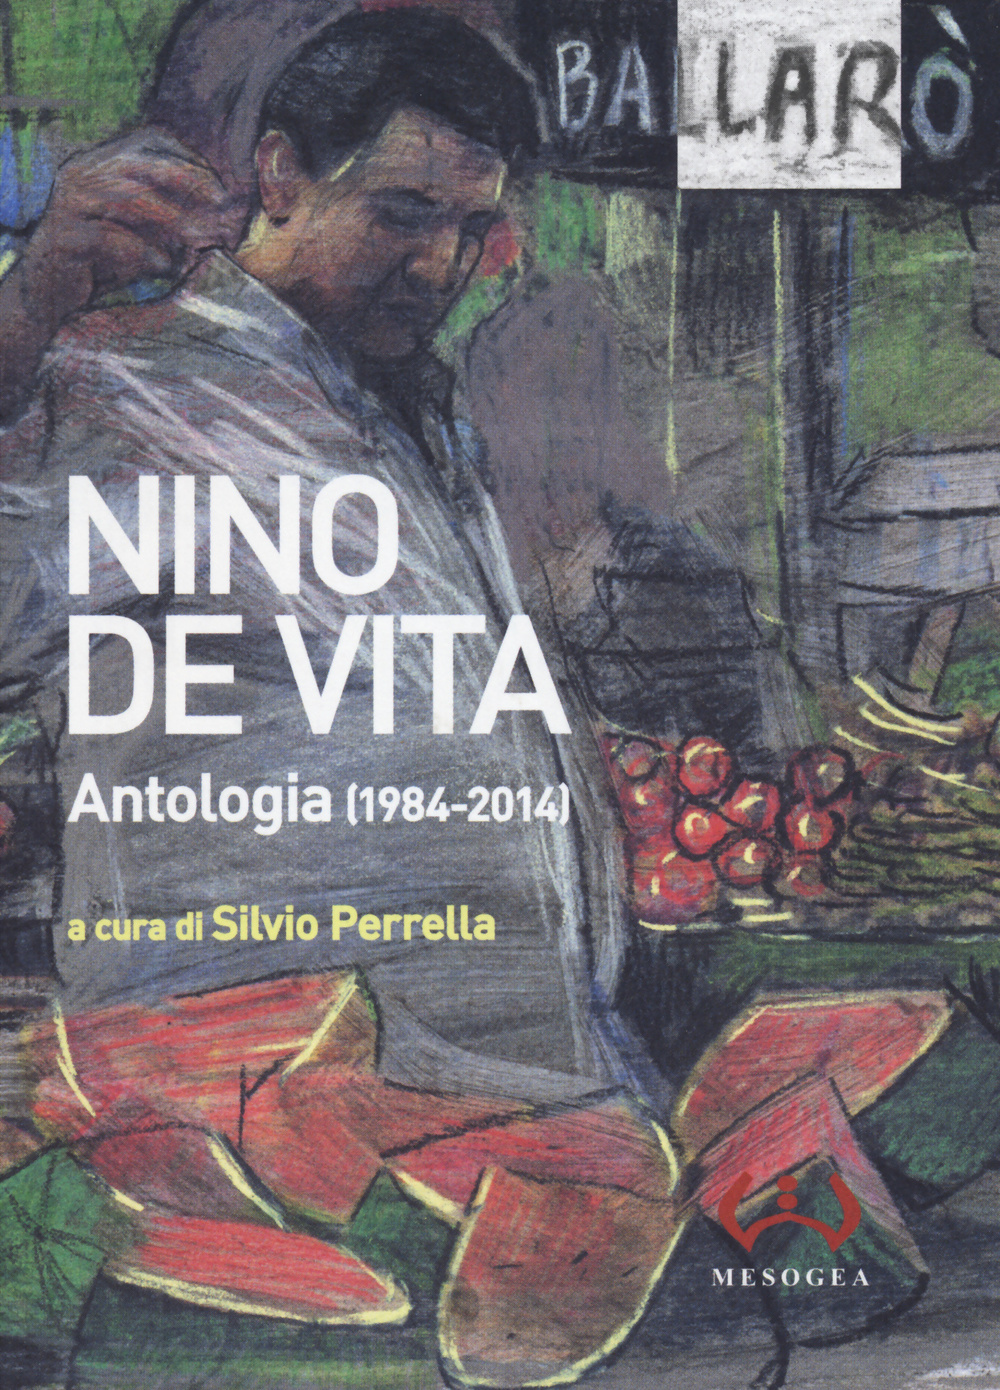 Antologia (1984-2014). Testo a fronte siciliano